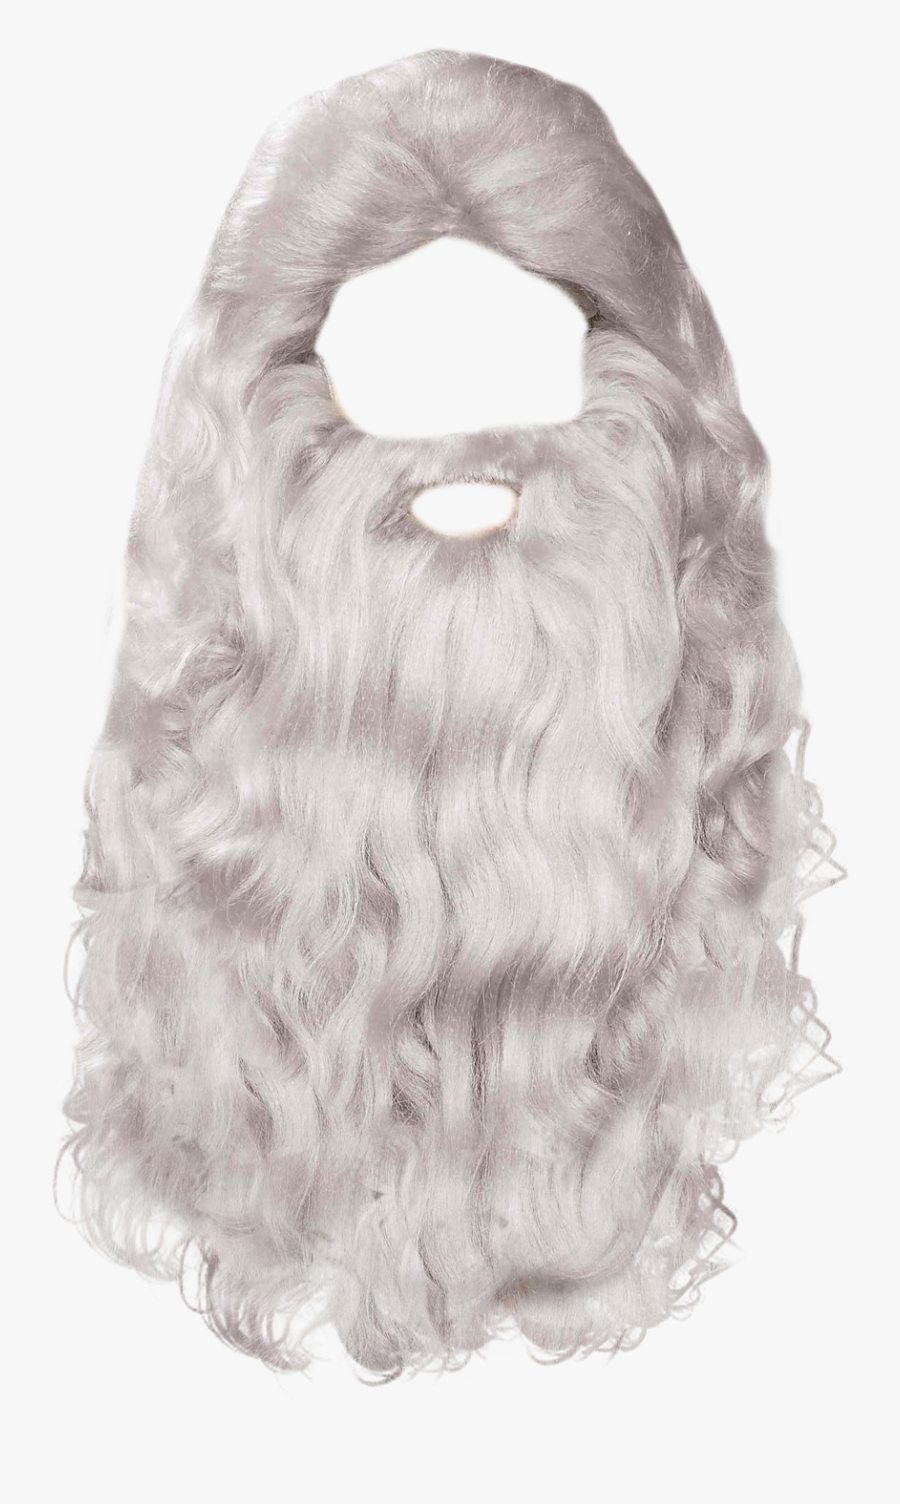 Beard Png Transparent Image - Santa Claus Beard Png, Transparent Clipart